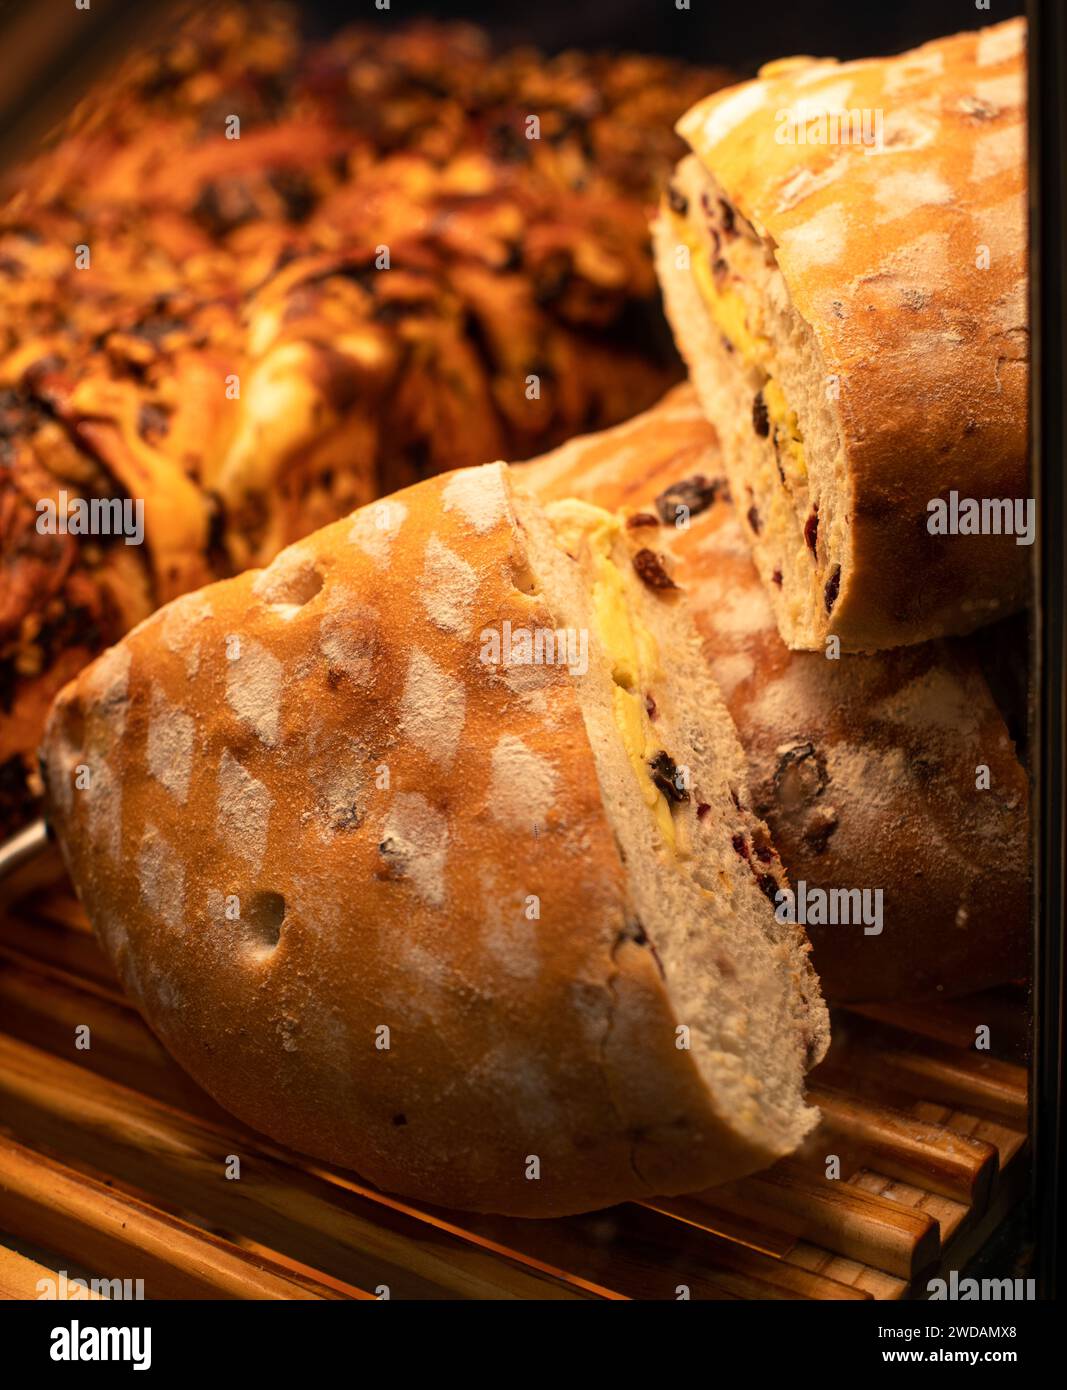 Le délicieux pain placé sur des étagères en bois, ces pains ont des formes exquises et sont éclairés par des lumières chaudes. Banque D'Images